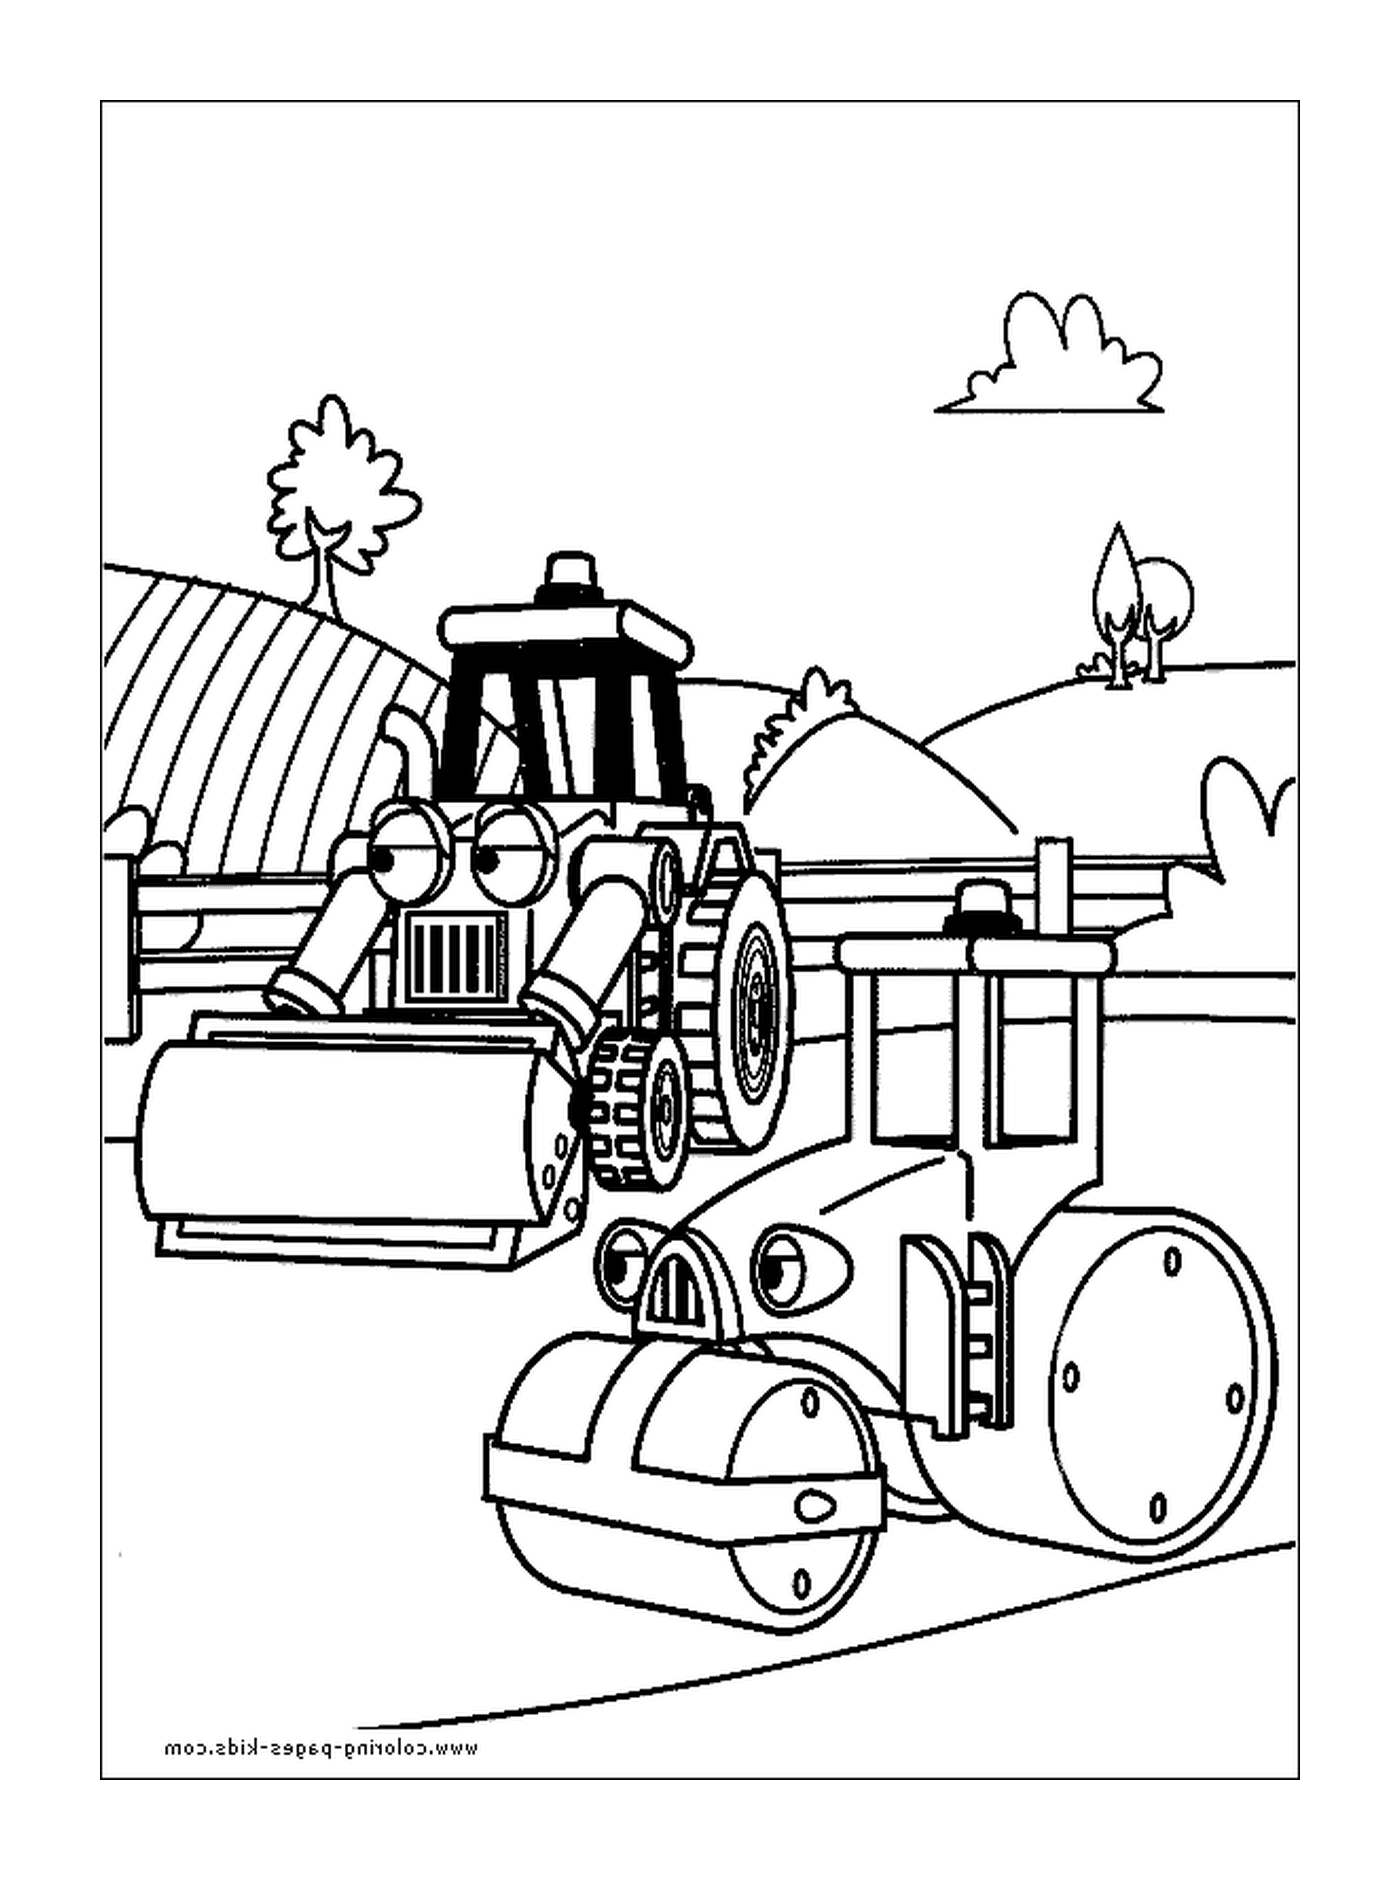  Кран и строительный трактор 